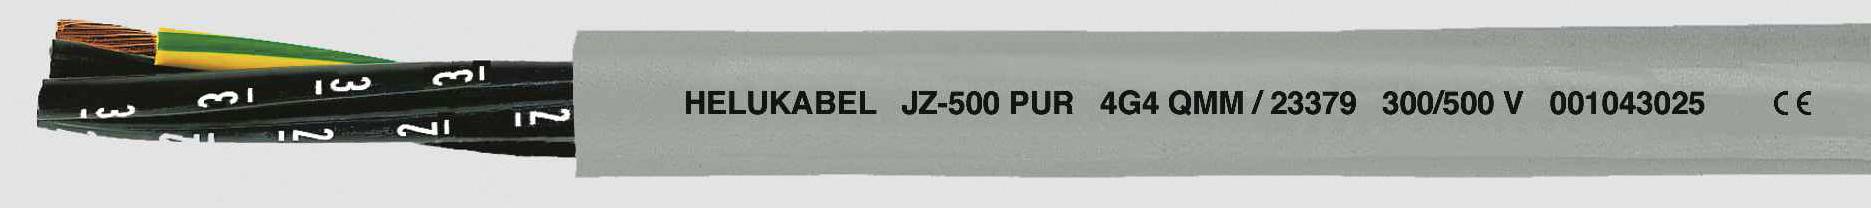 HELUKABEL JZ-500 PUR Steuerleitung 3 G 2.50 mm² Grau 23374-500 500 m